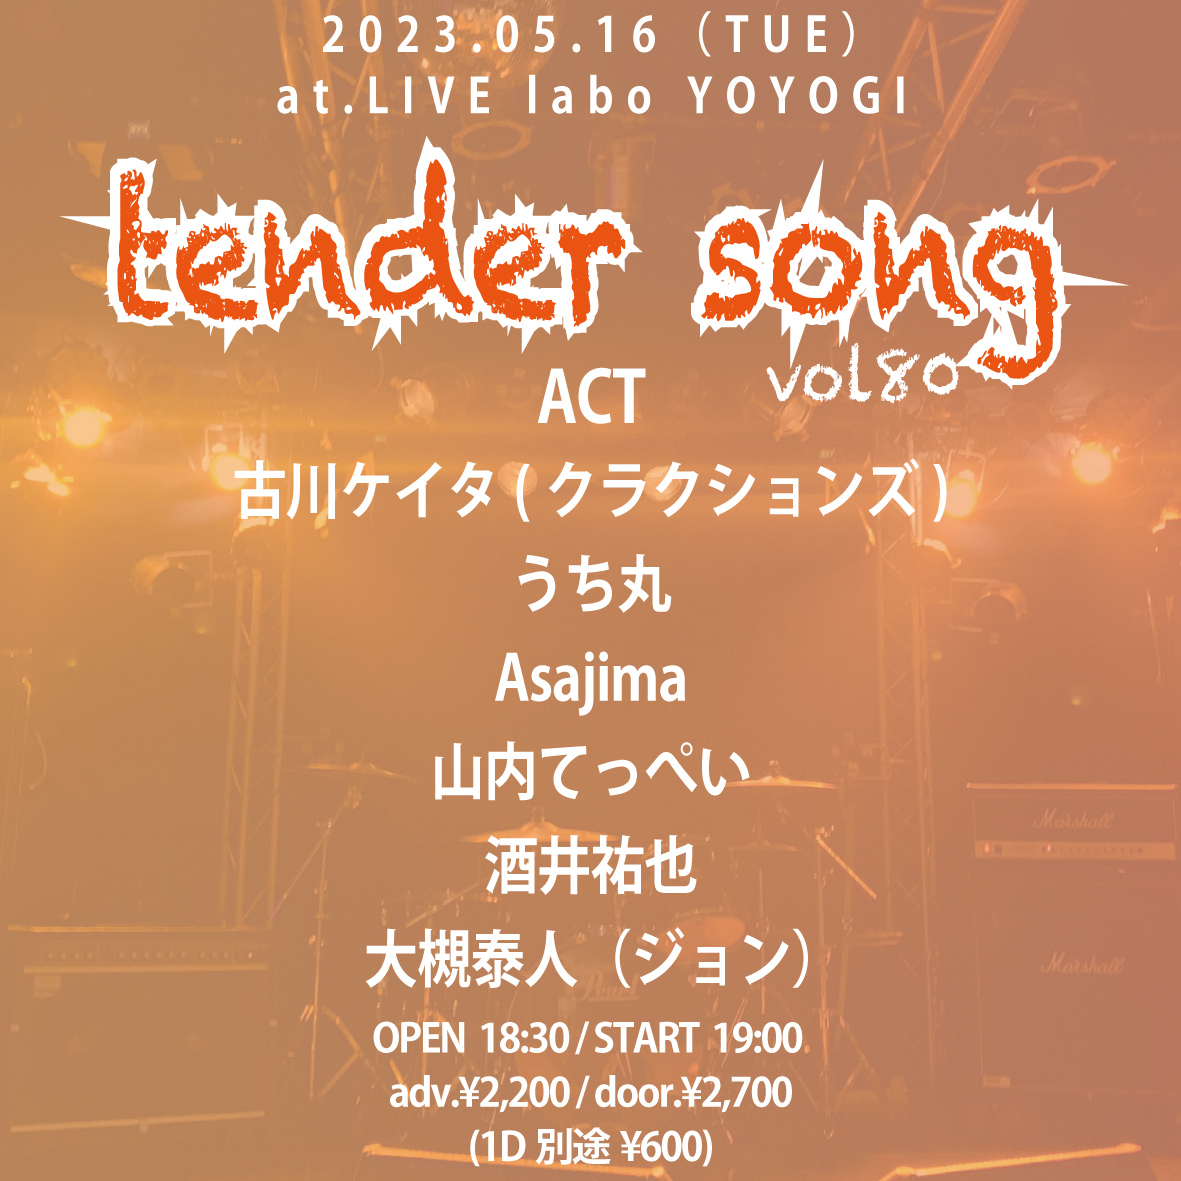 tender song vol.80